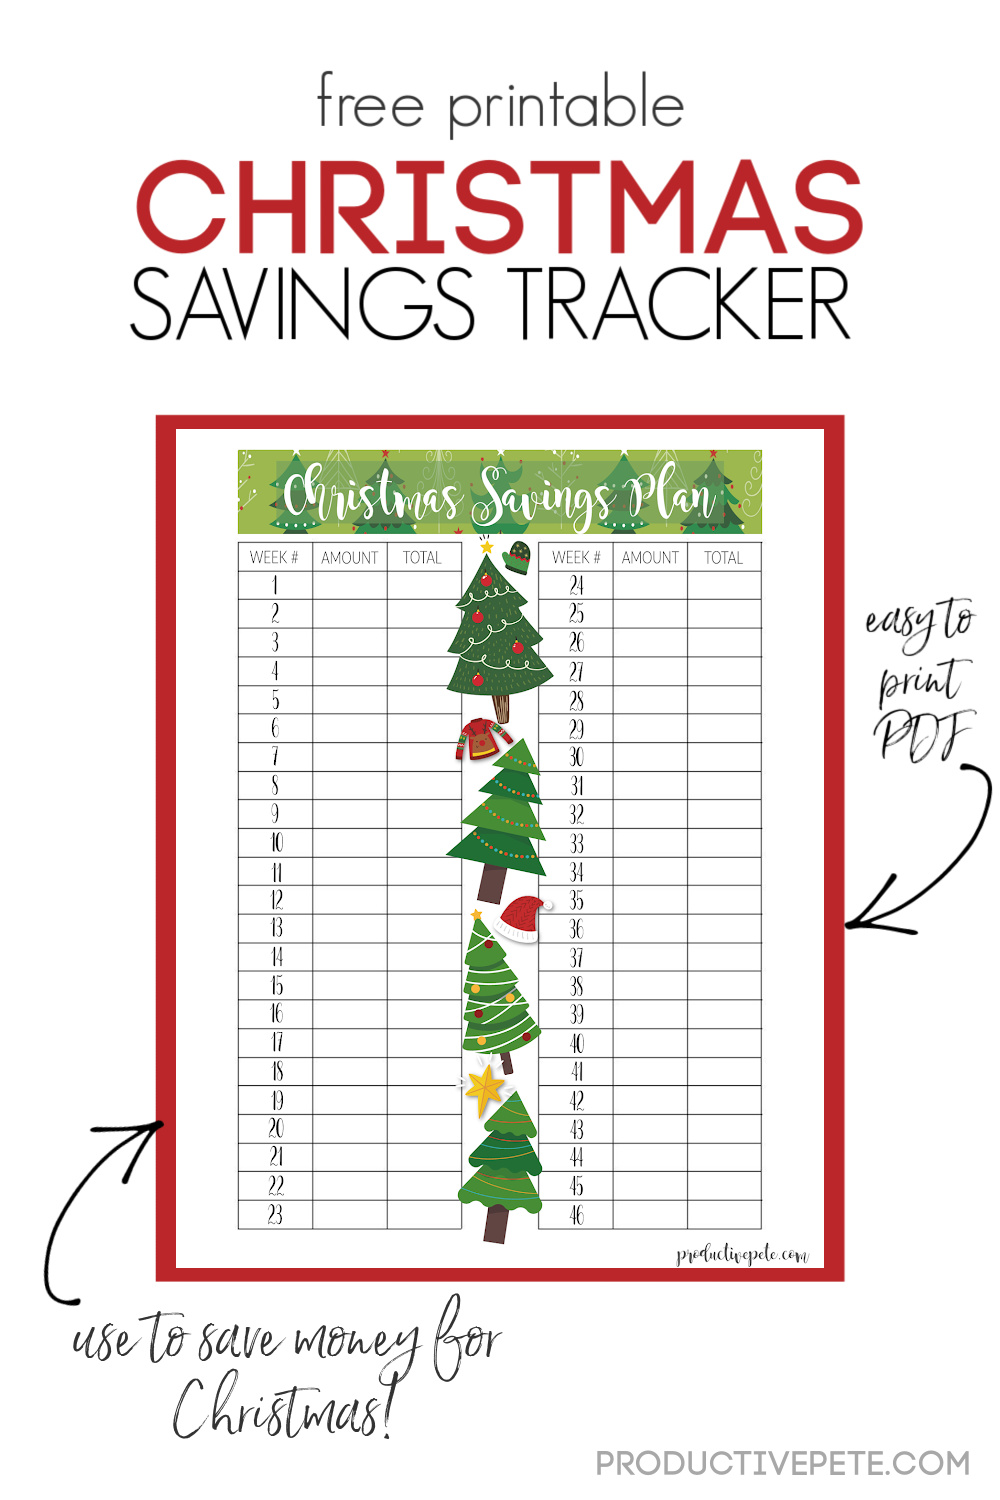 Free Printable Christmas Savings Plan Tracker You Can Customize 